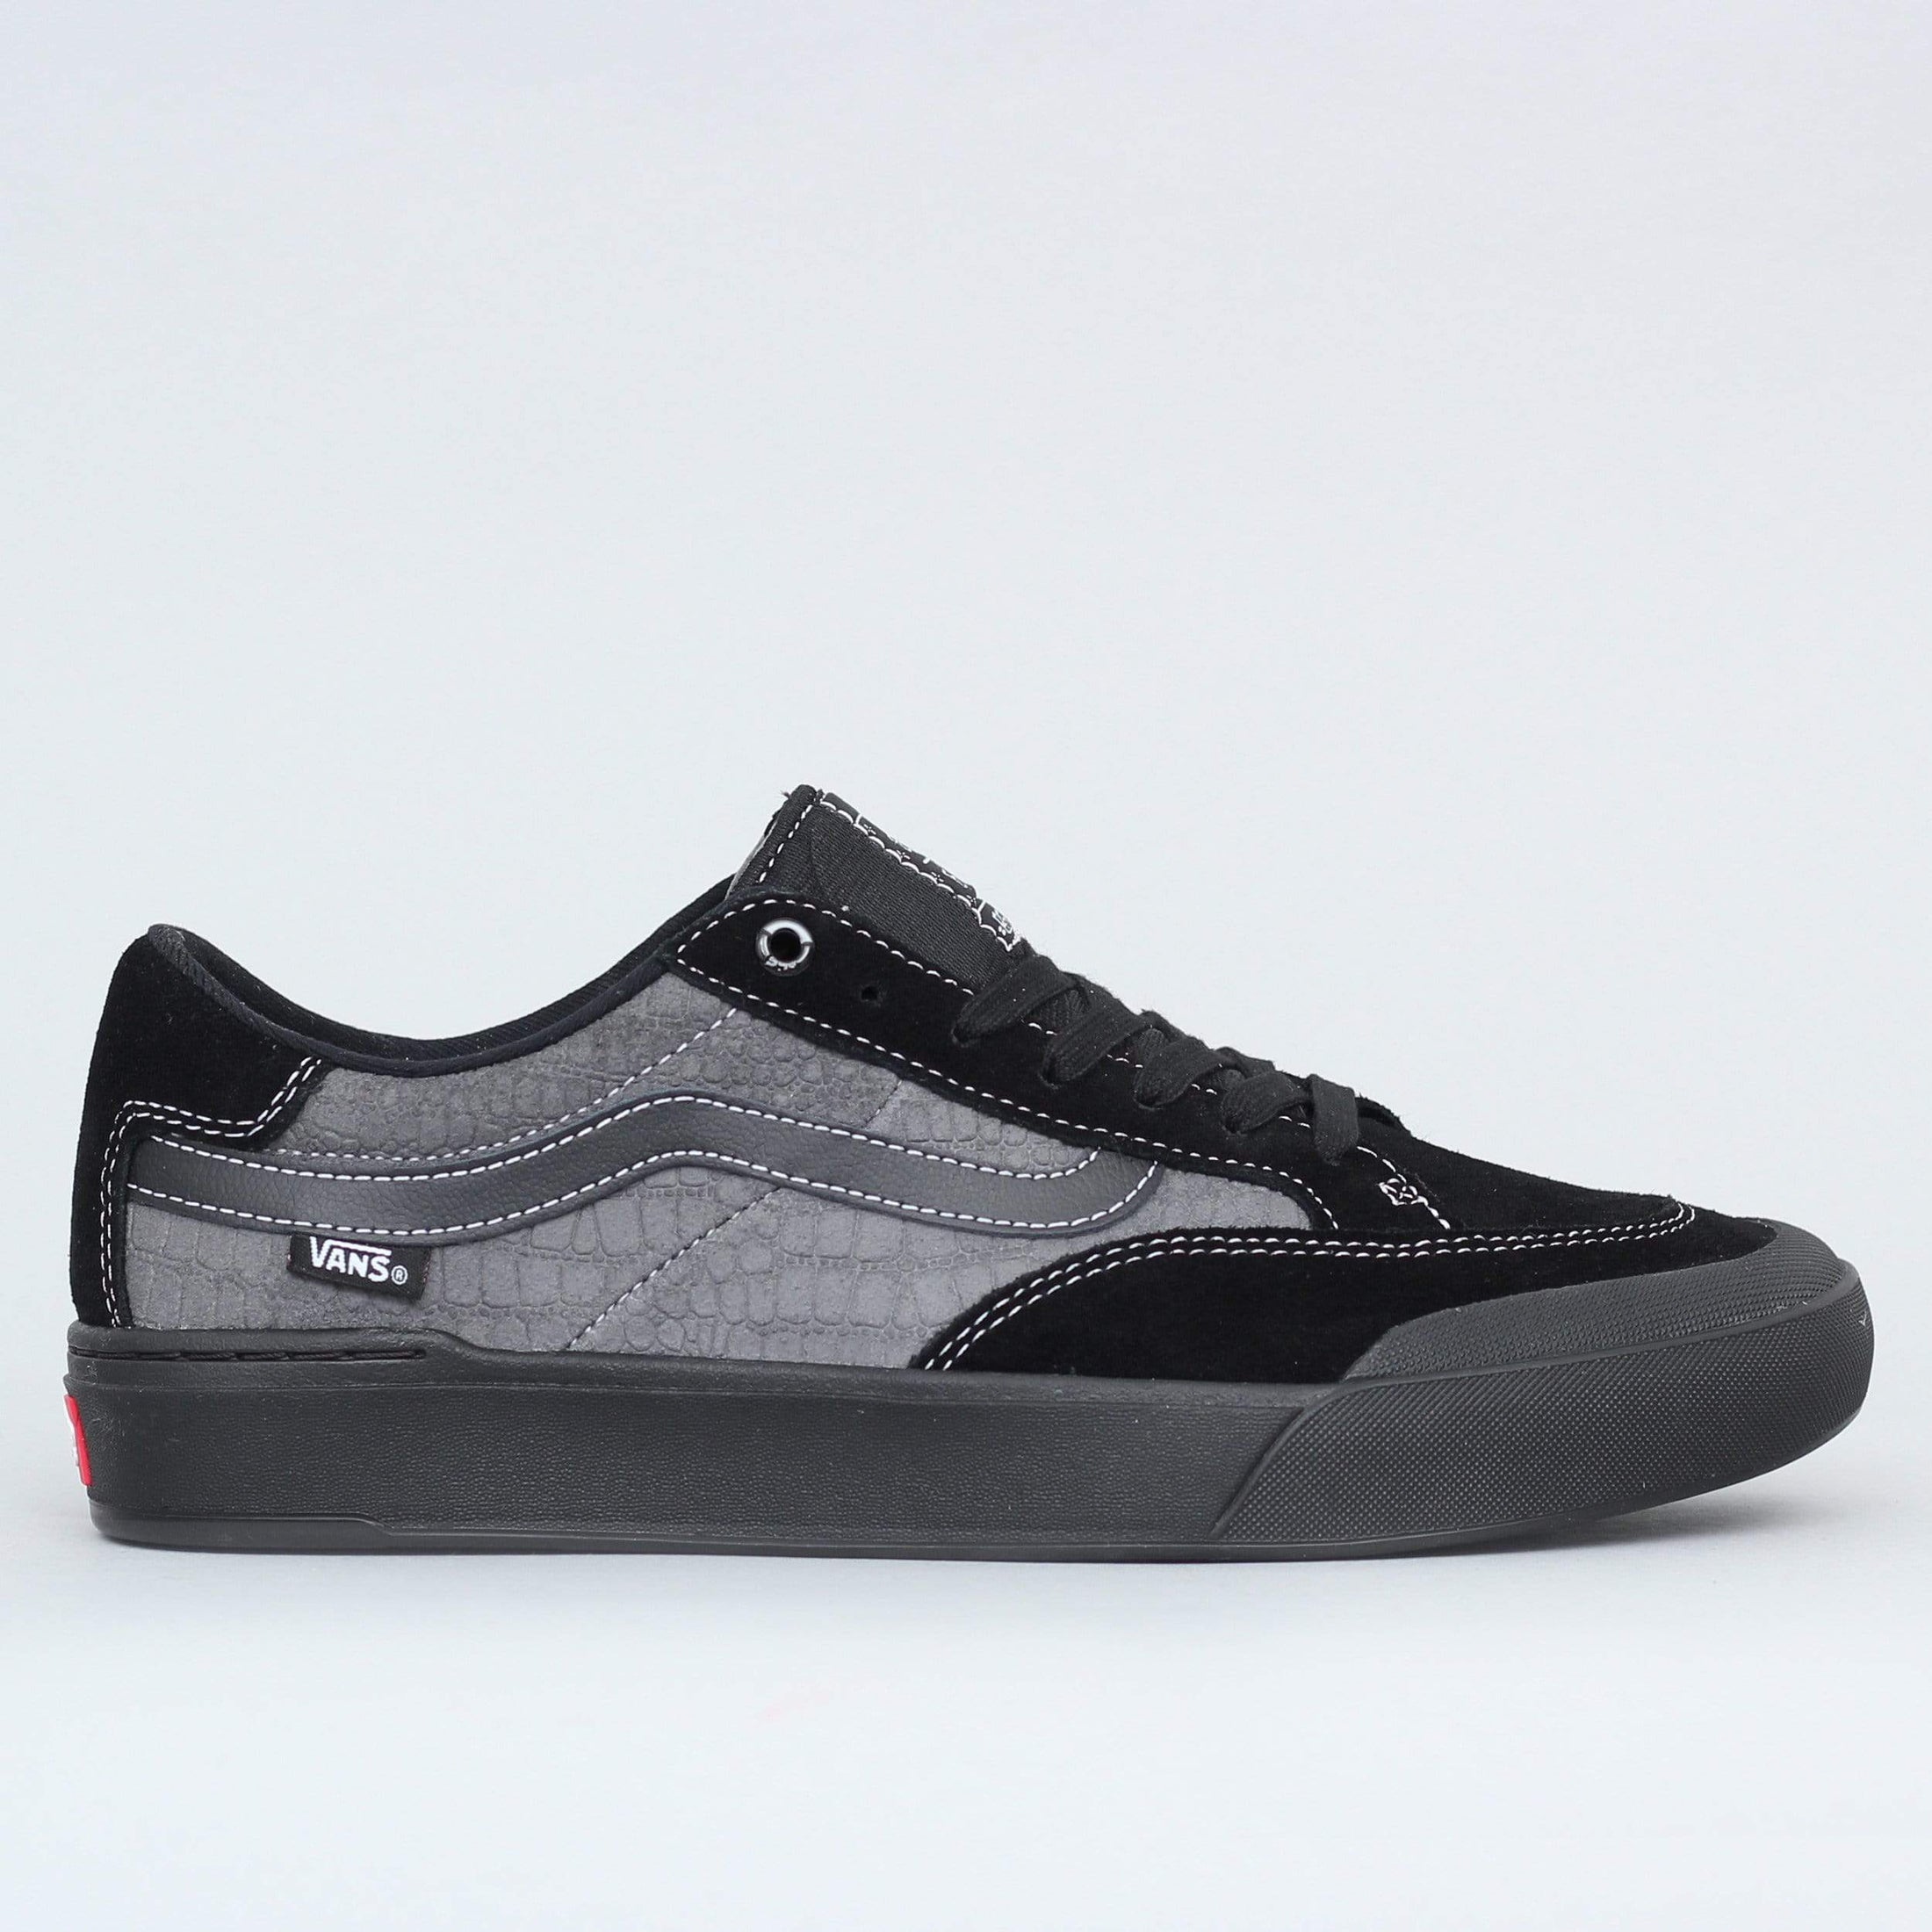 Vans Berle Pro Shoes (Croc) Black / Pewter